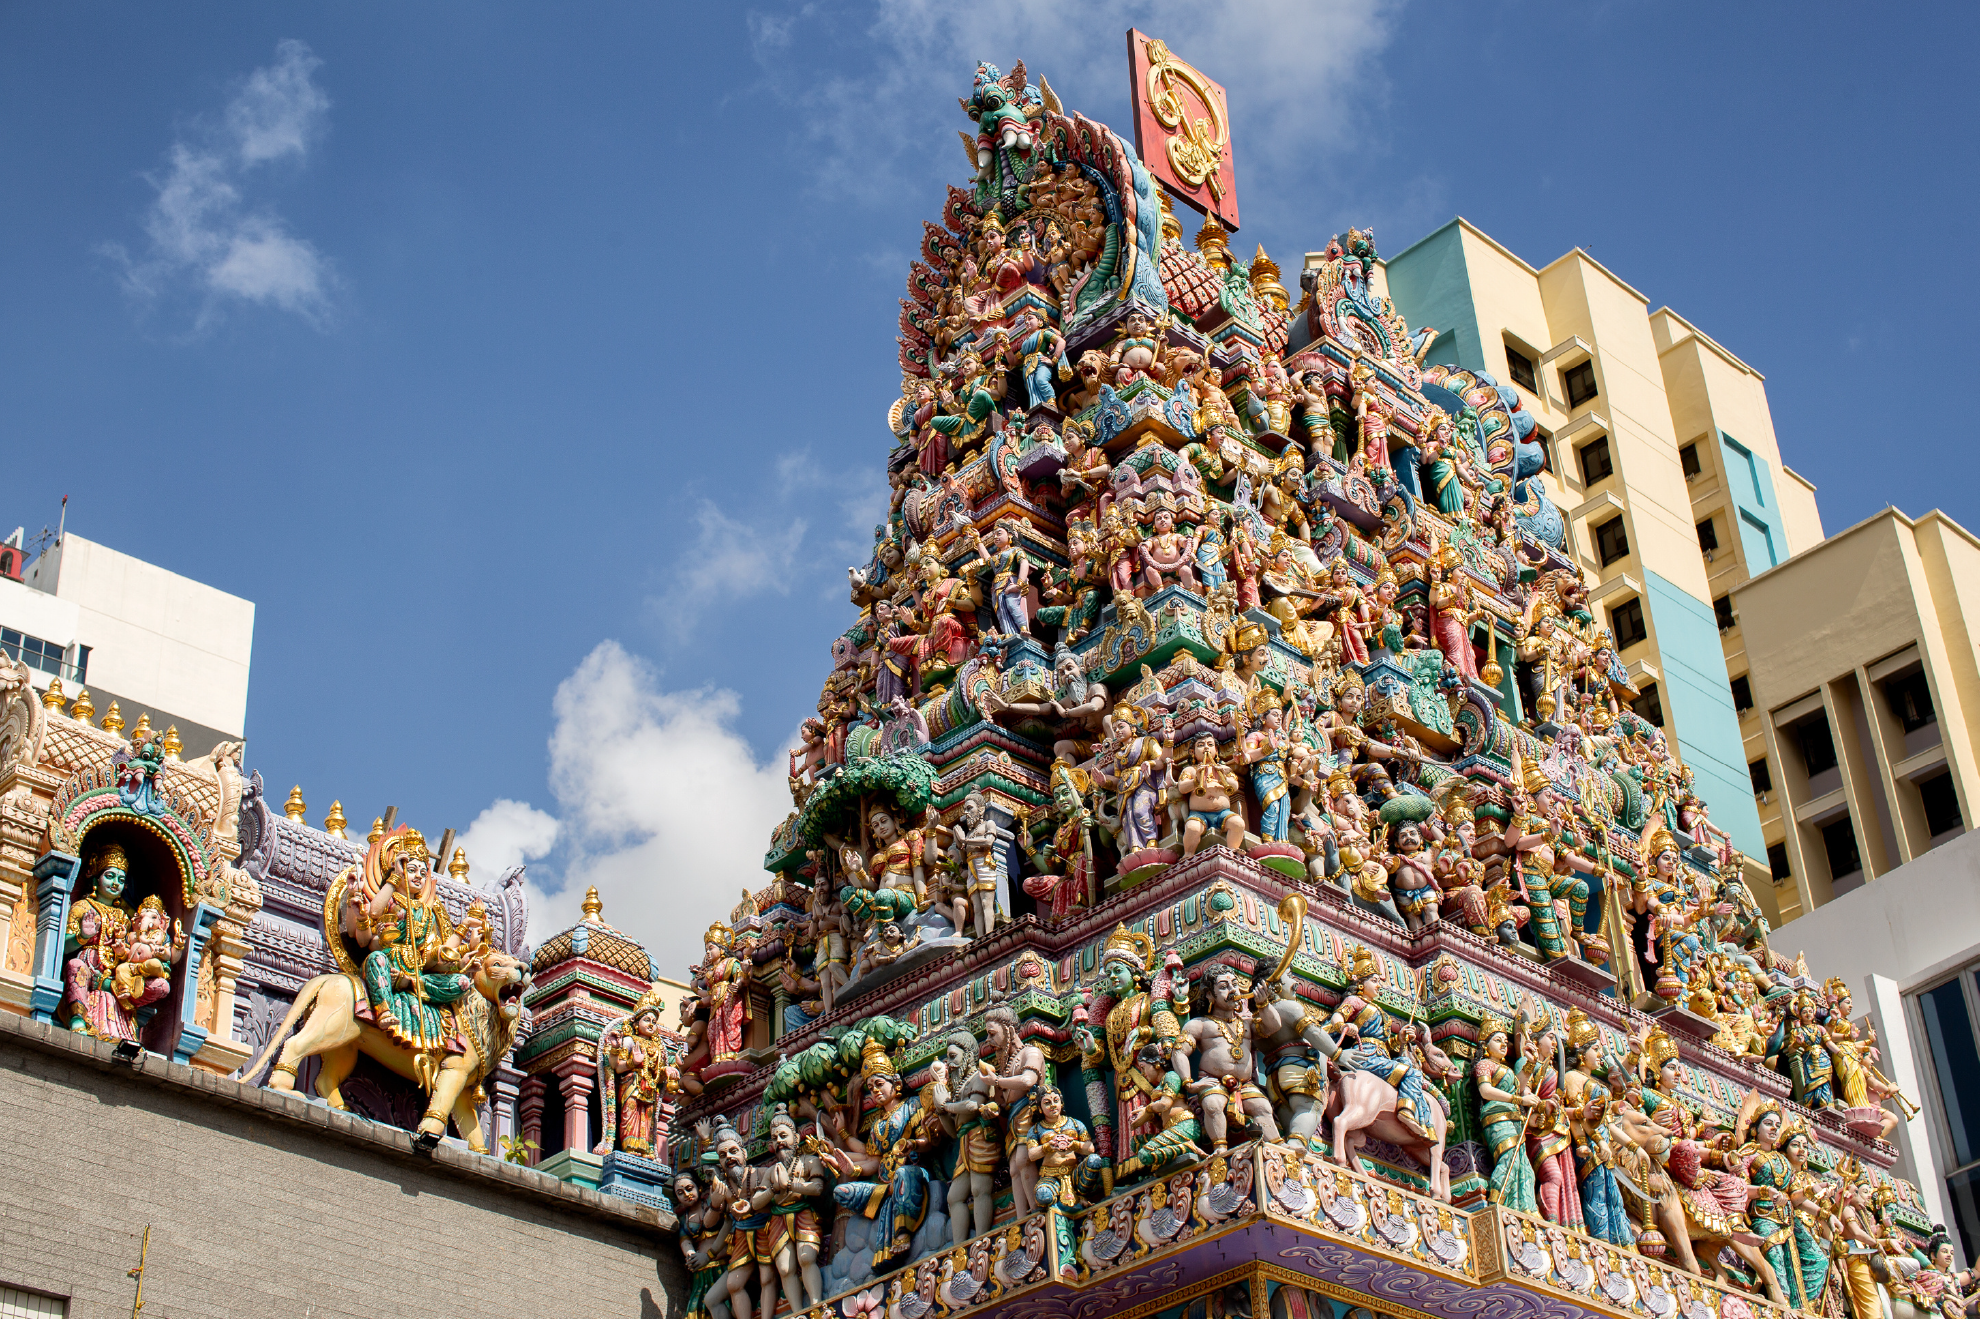 Tempio Sri Veeramakaliamman